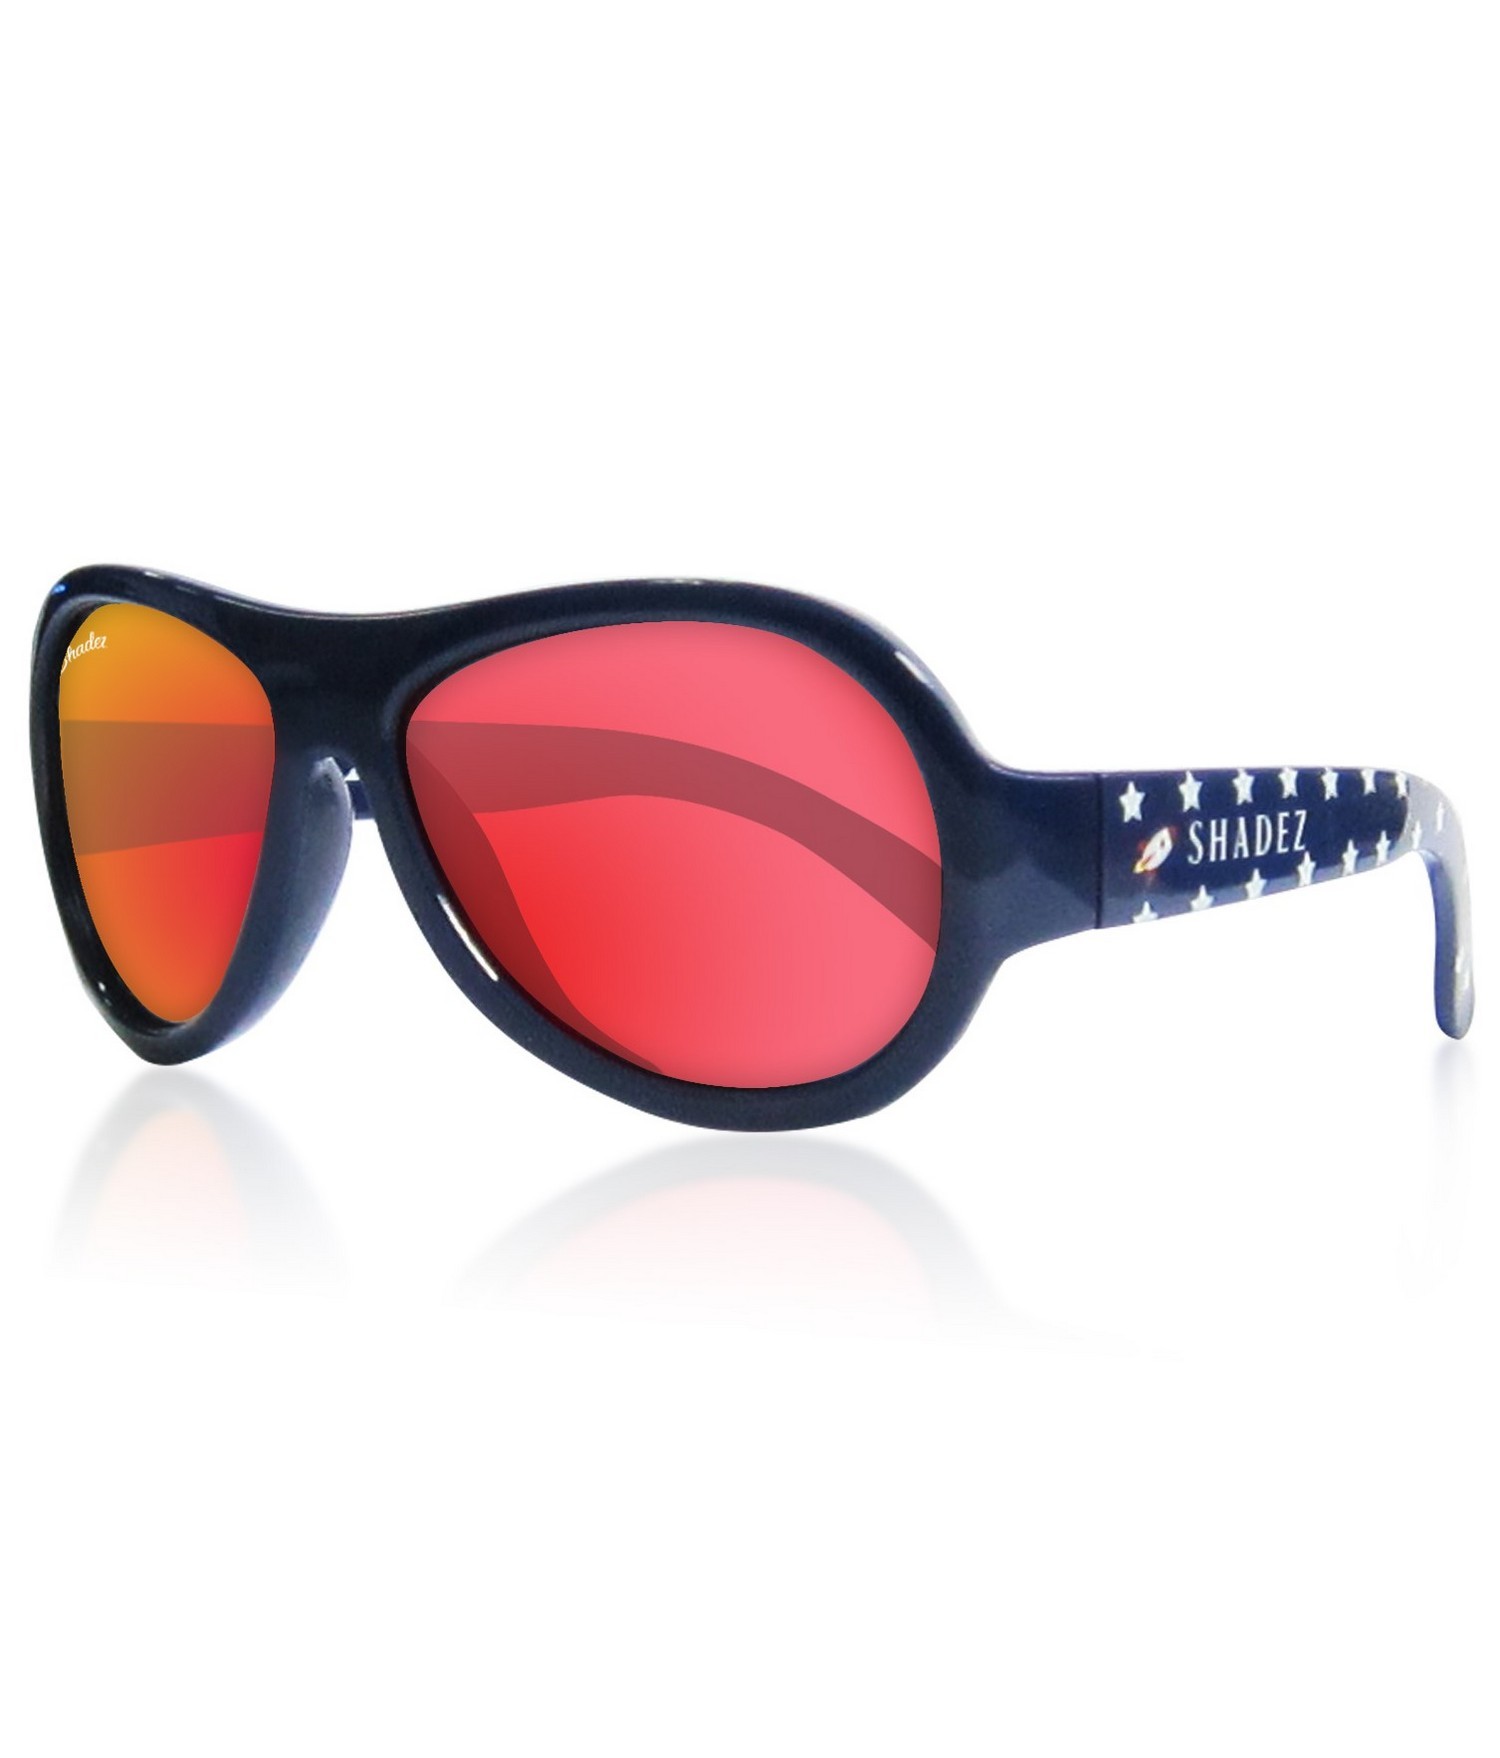 Shadez - UV-Sonnenbrille für Jungen - Designers - Rocket Star